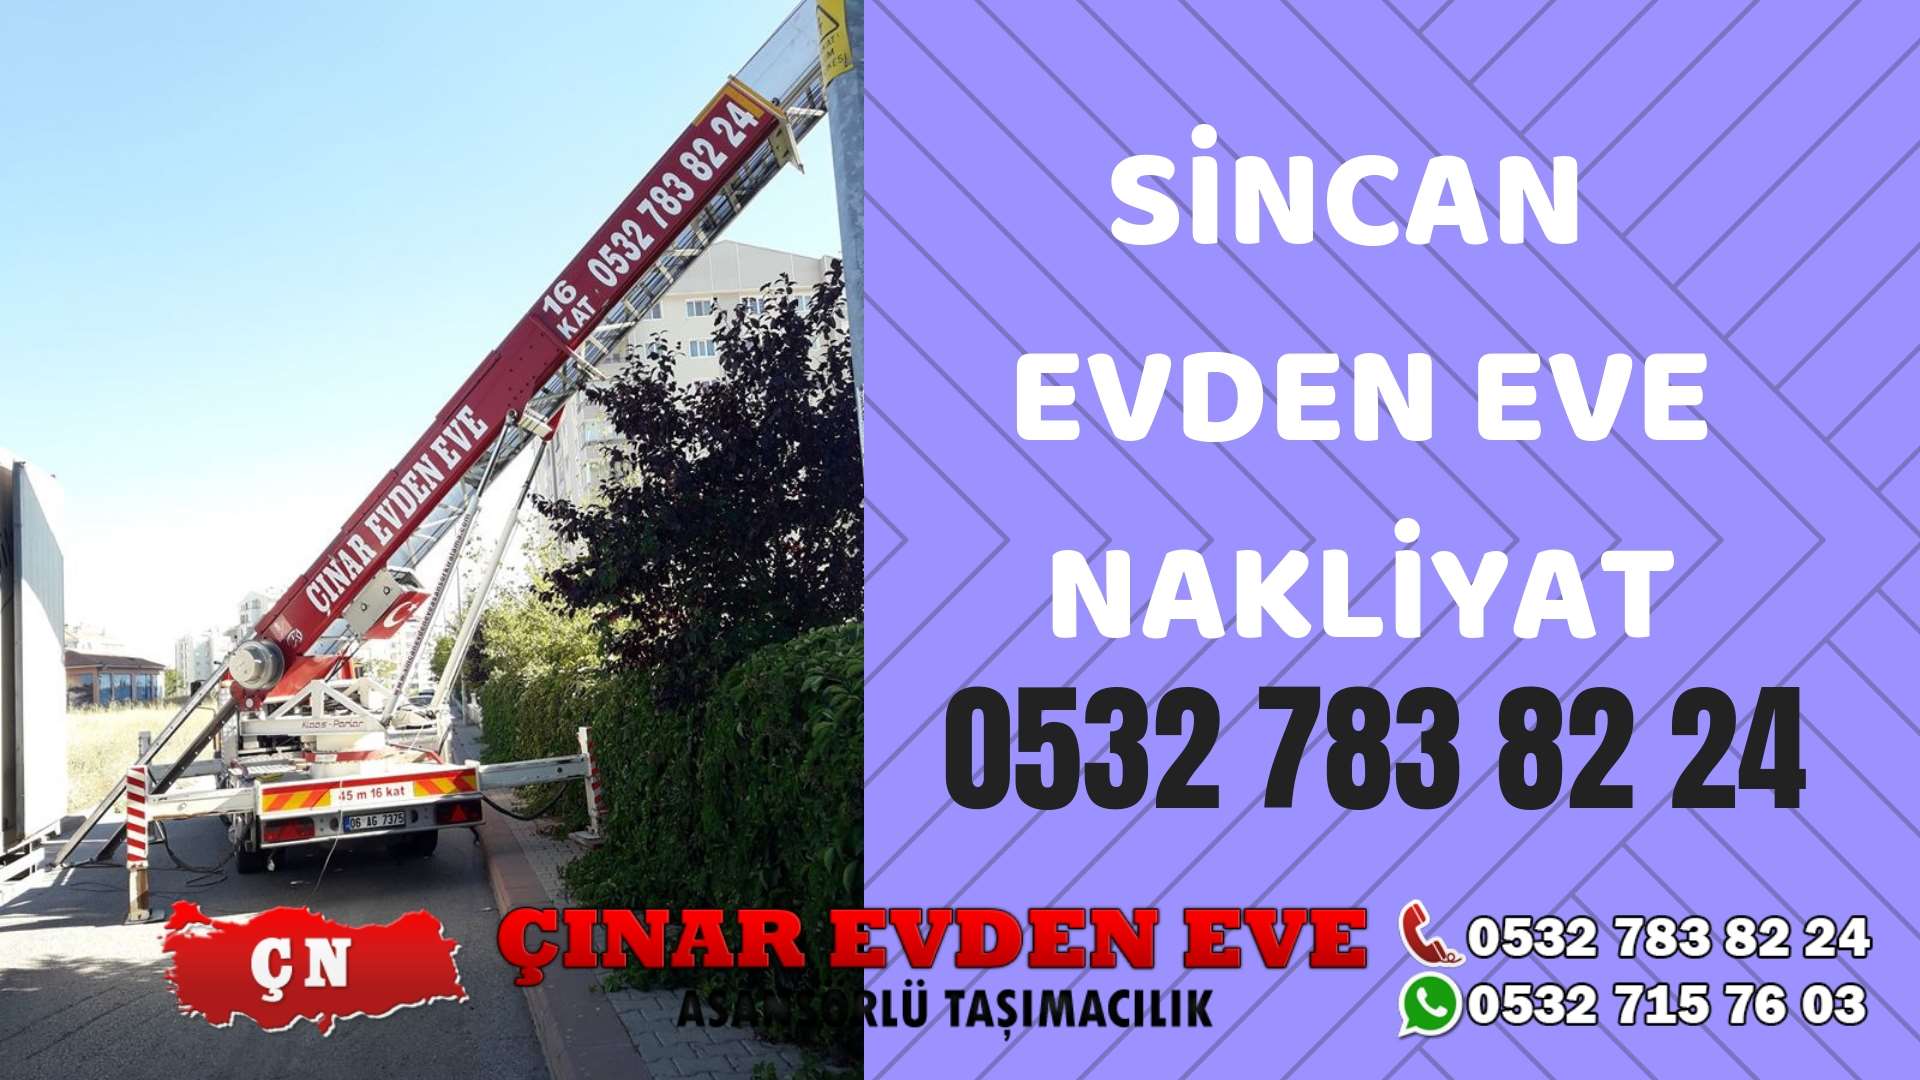 Ankara Pursaklar Sincan evden eve asansörlü nakliyat en ucuz nakliye 0532 715 76 03